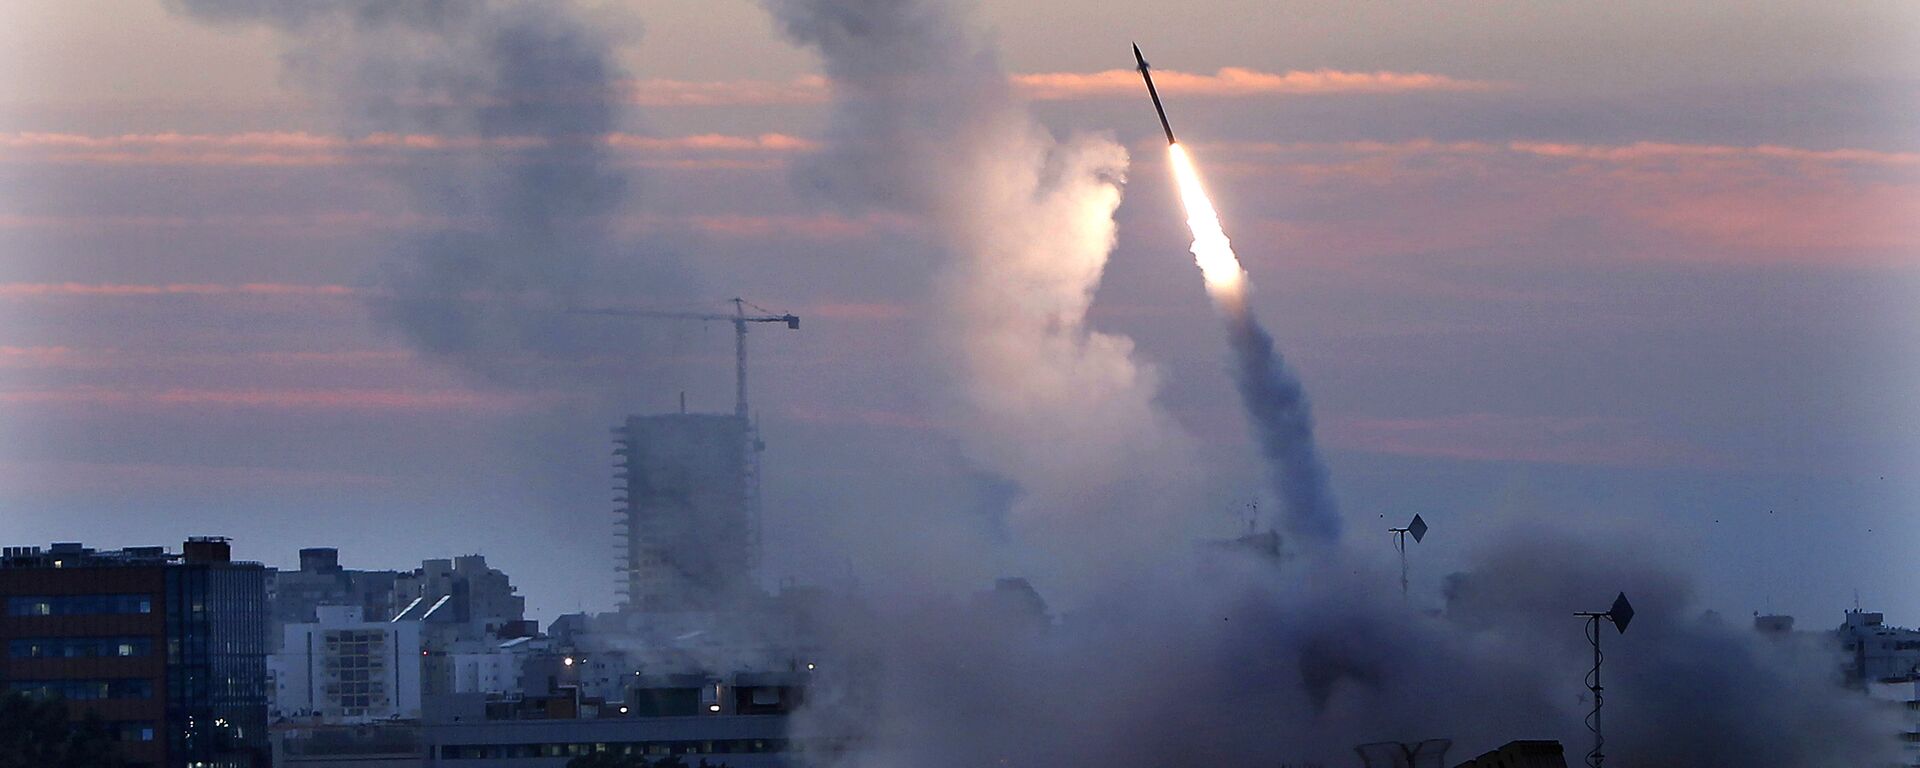 Sistema de defensa antiaérea de Israel intercepta un misil lanzado desde Gaza (archivo) - Sputnik Mundo, 1920, 23.02.2023